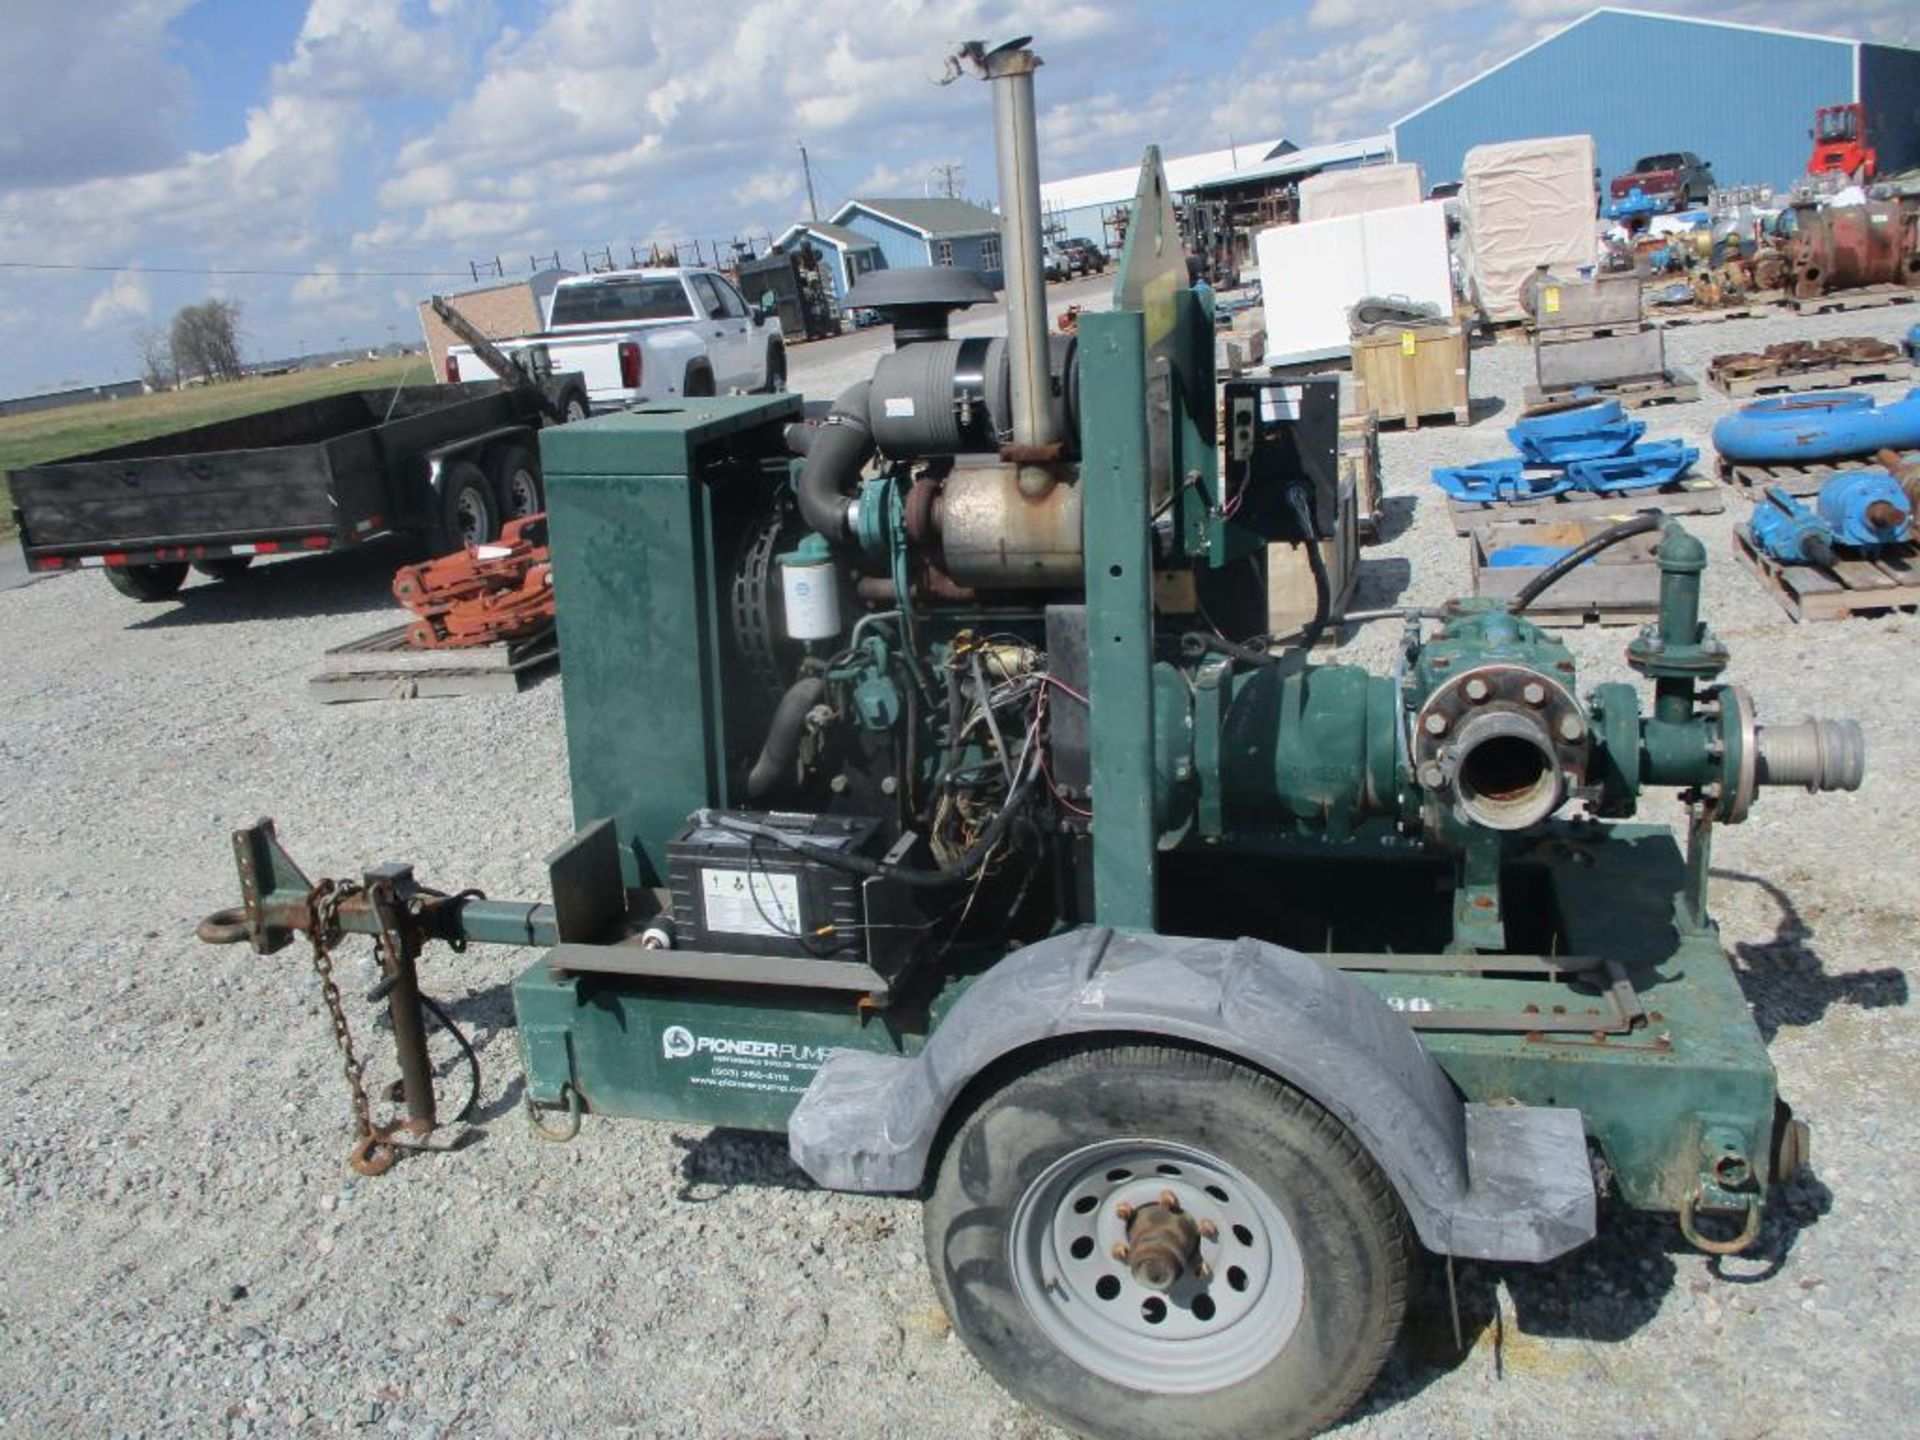 Pioneer Pump, VP4451, Diesel Engine John Deere (Bad Engine) - Image 3 of 4